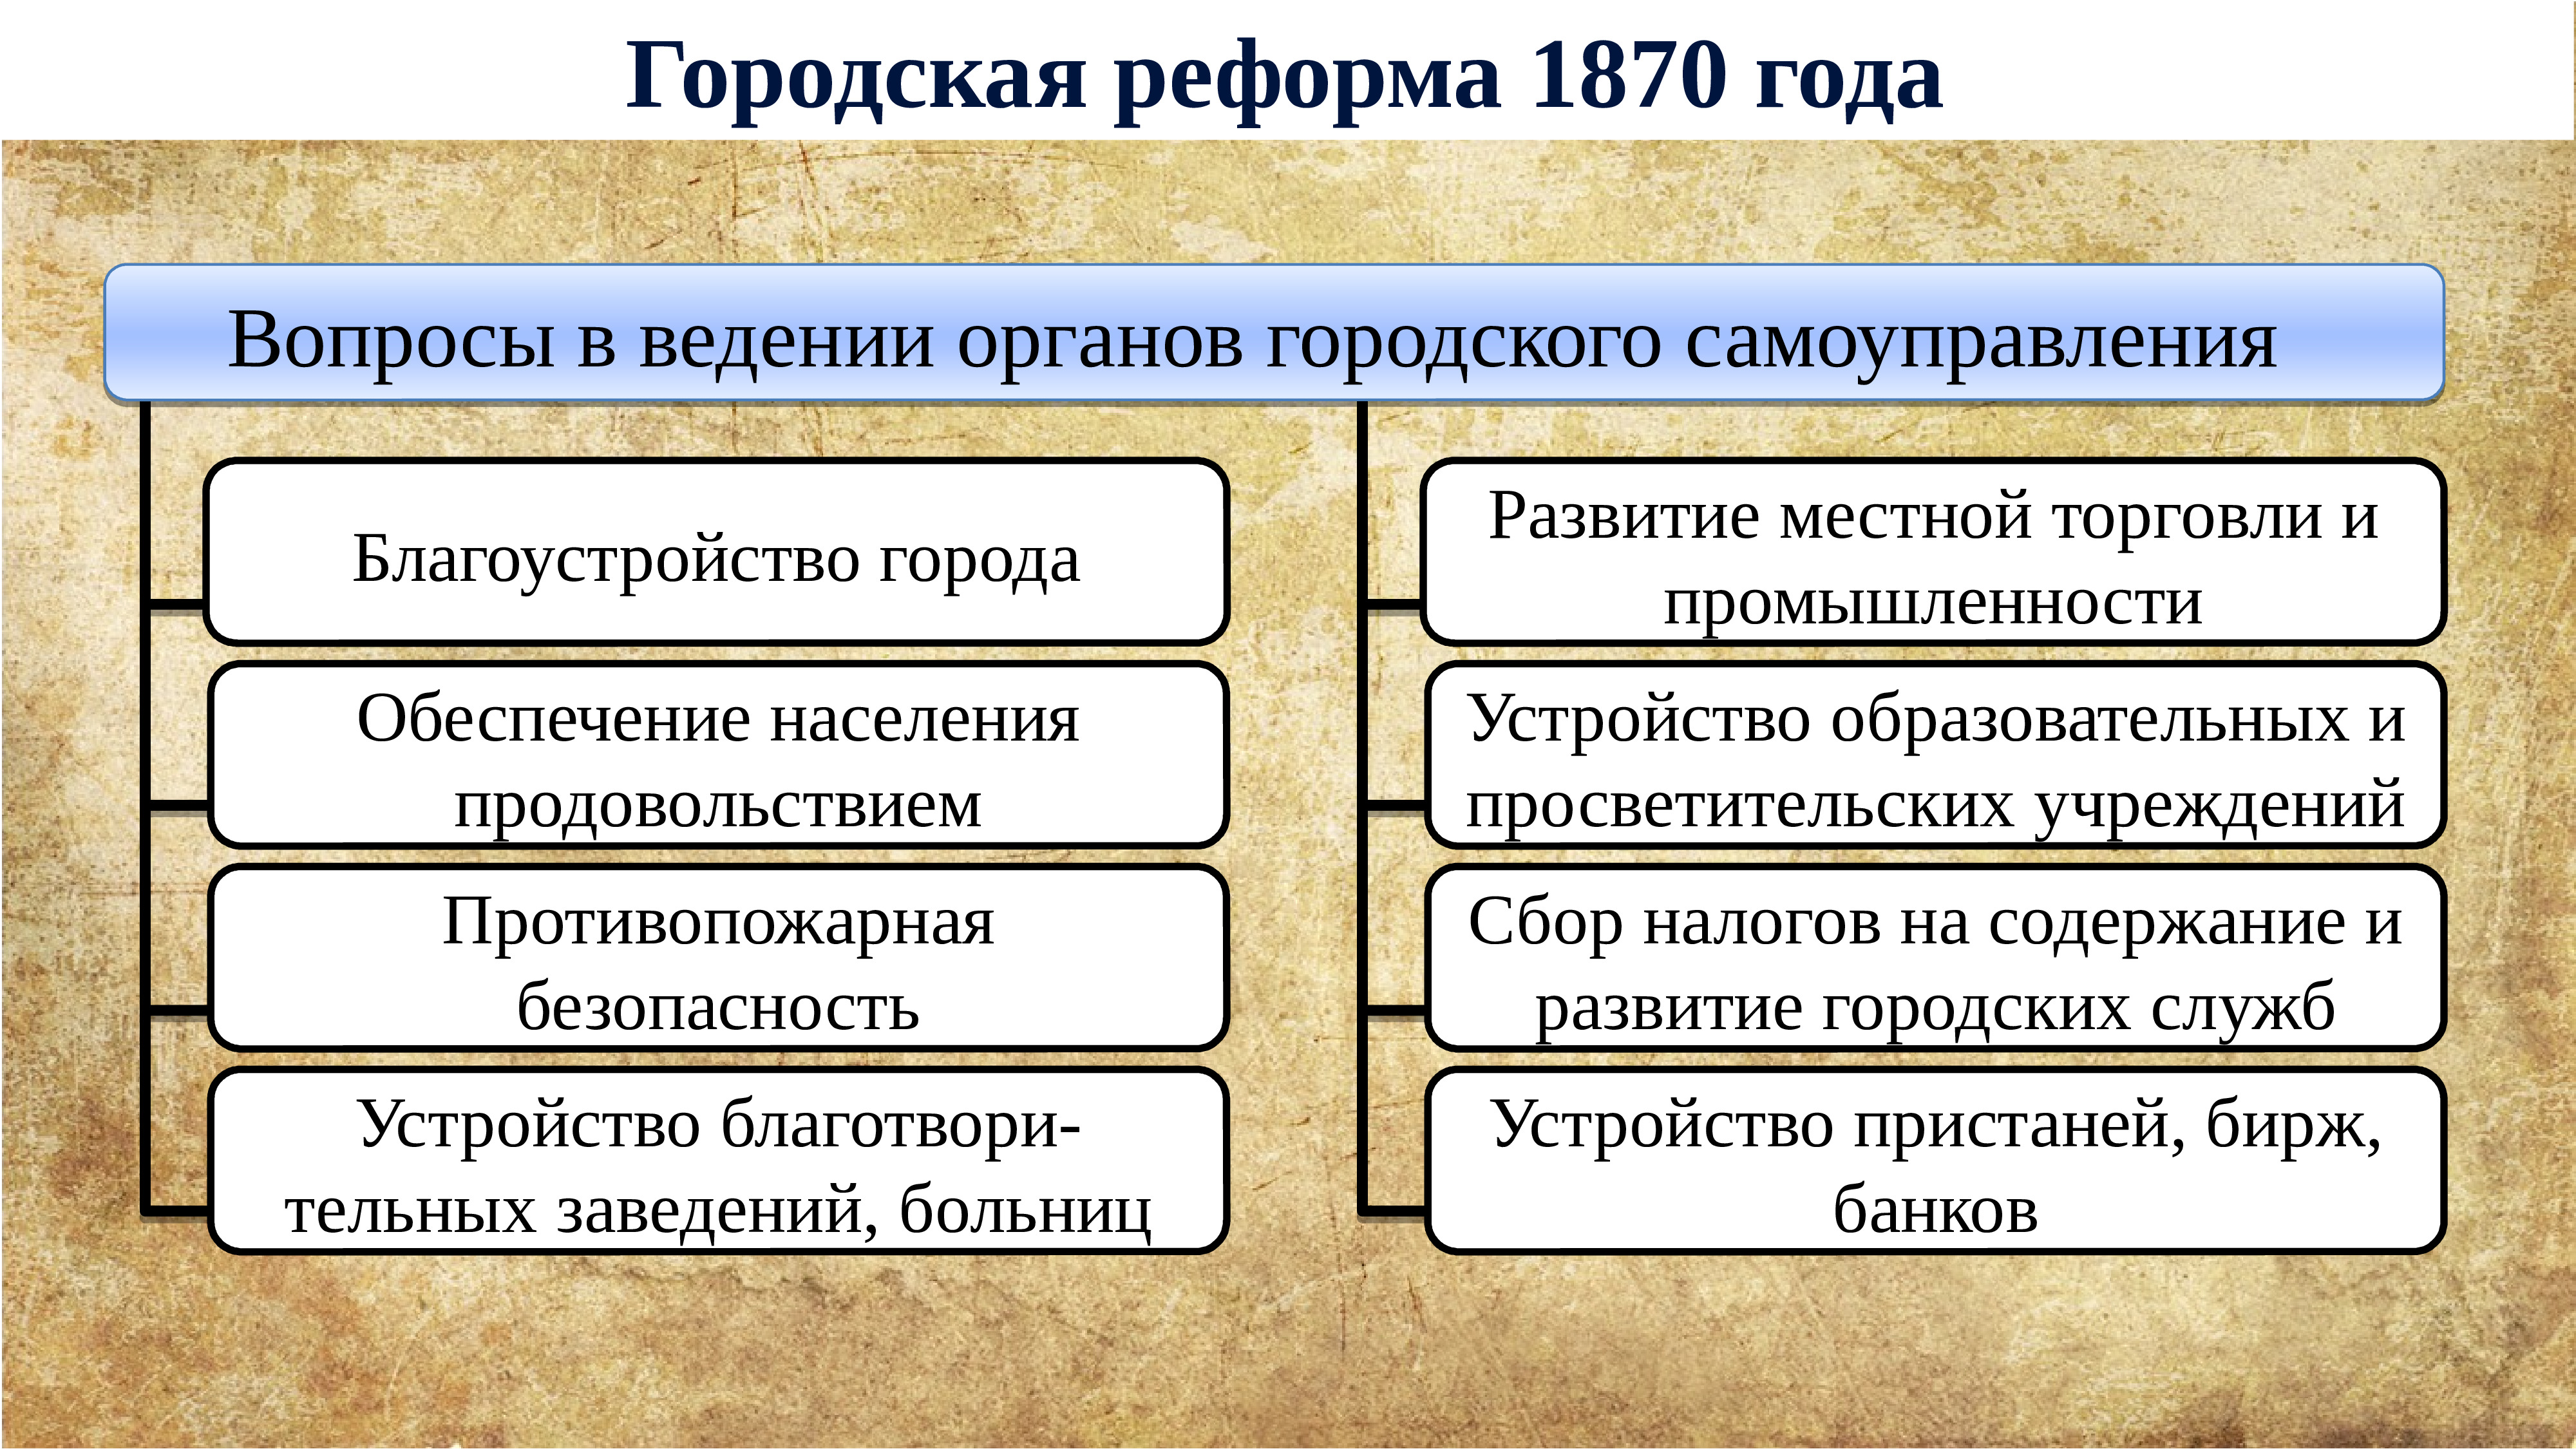 Внутренние реформы и изменения. Губернская реформа 1860-1870. Внутренняя политика Екатерины 2.